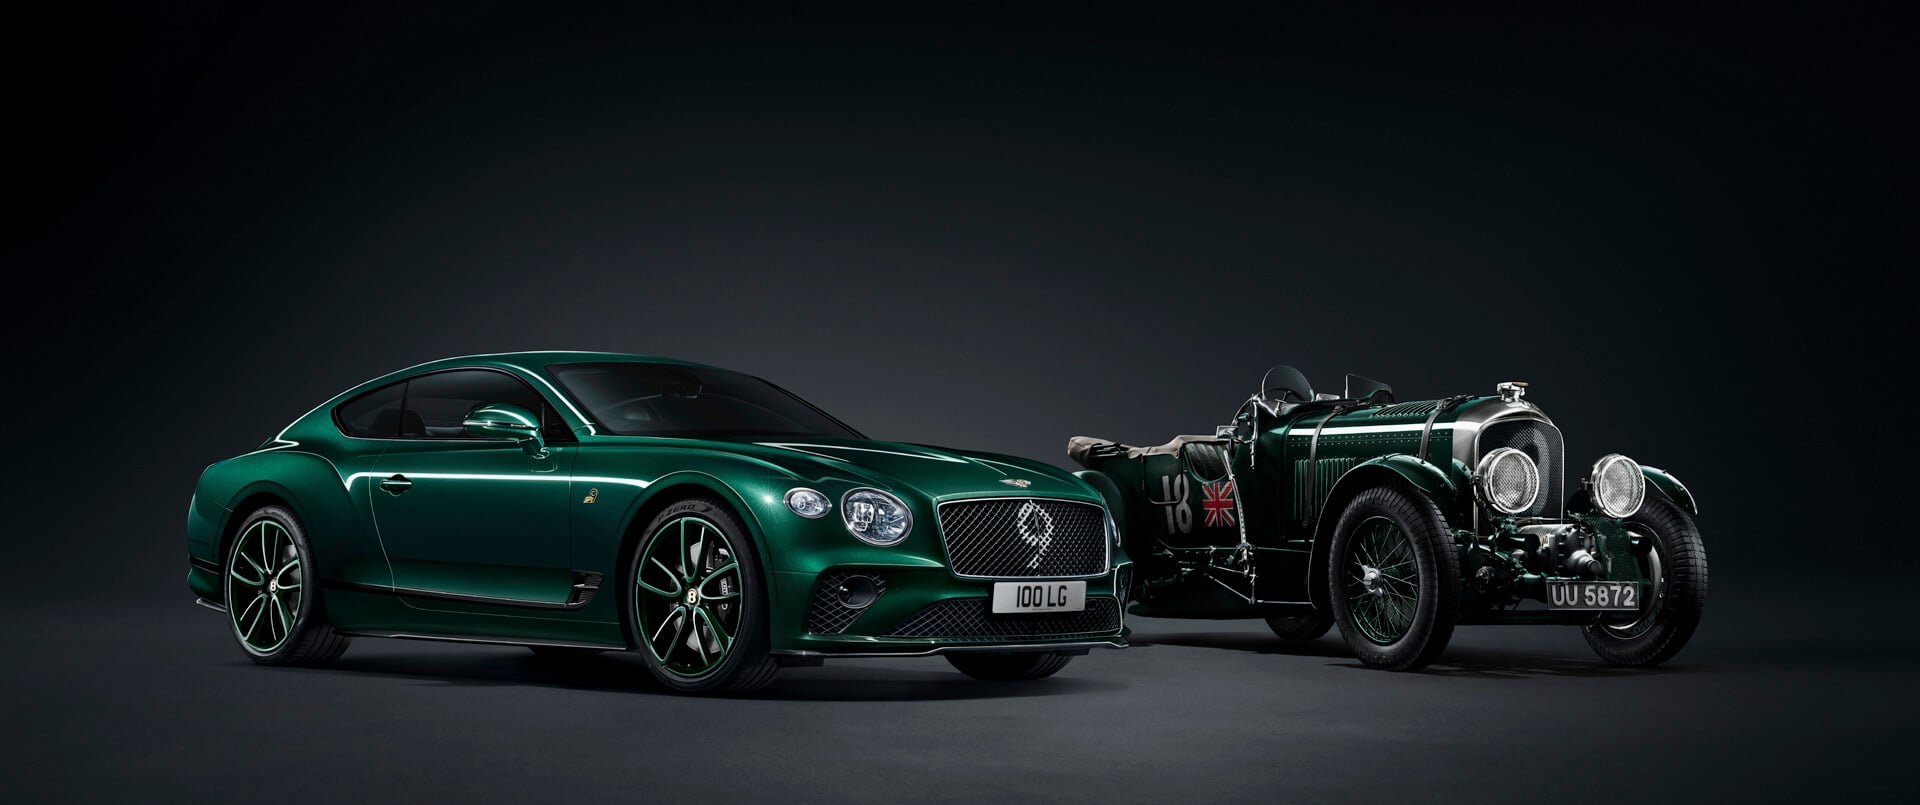 Gleichzeitig lancierte Breitling die Breitling Premier Bentley Centenary Limi­ted Edition.